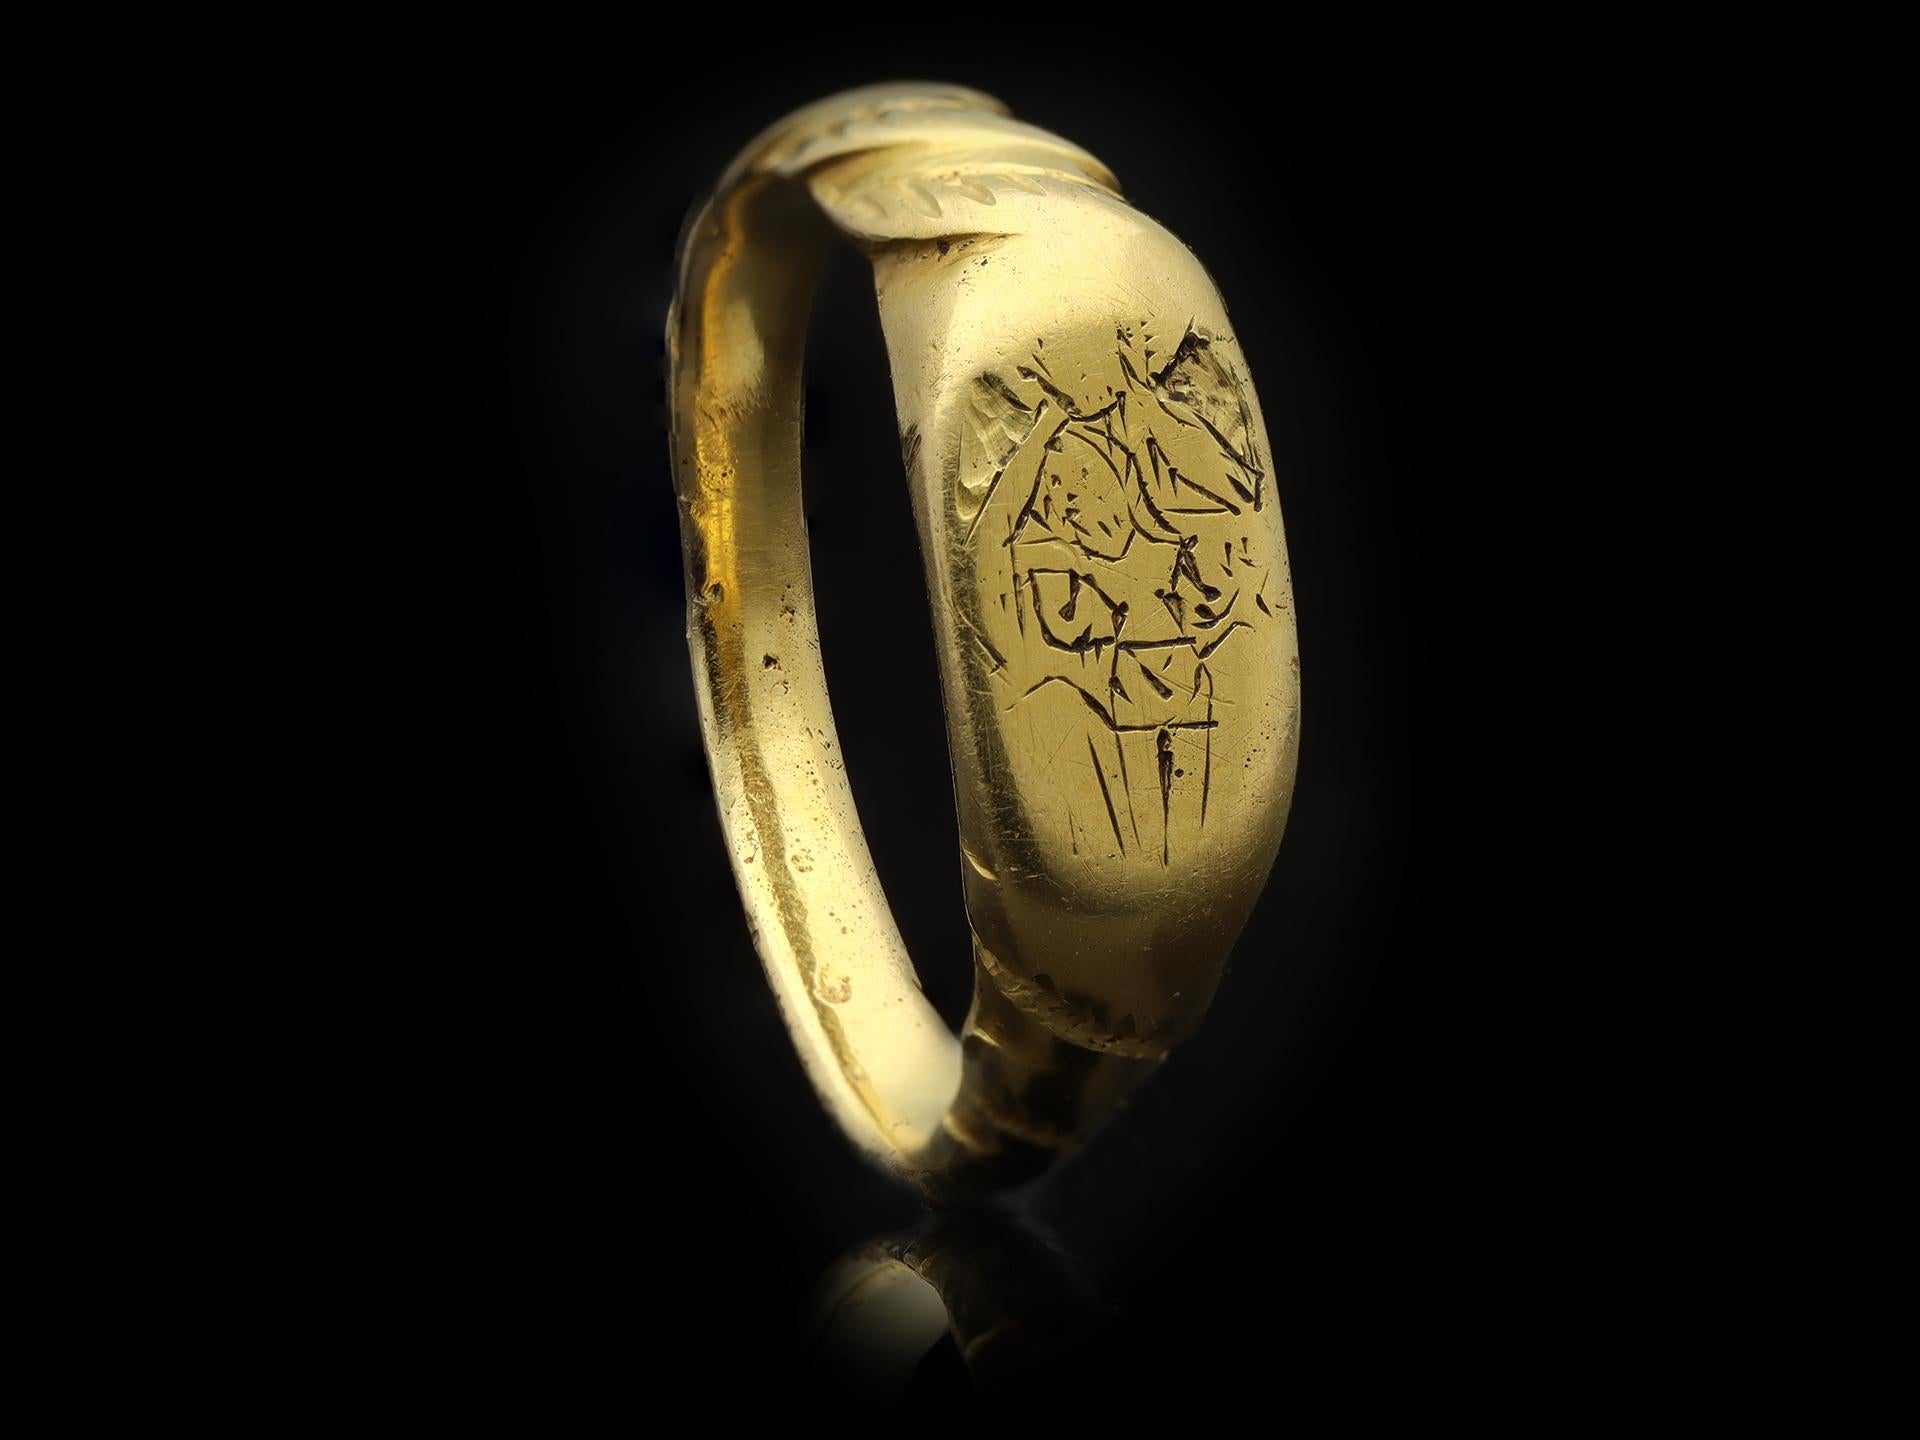 15th century rings